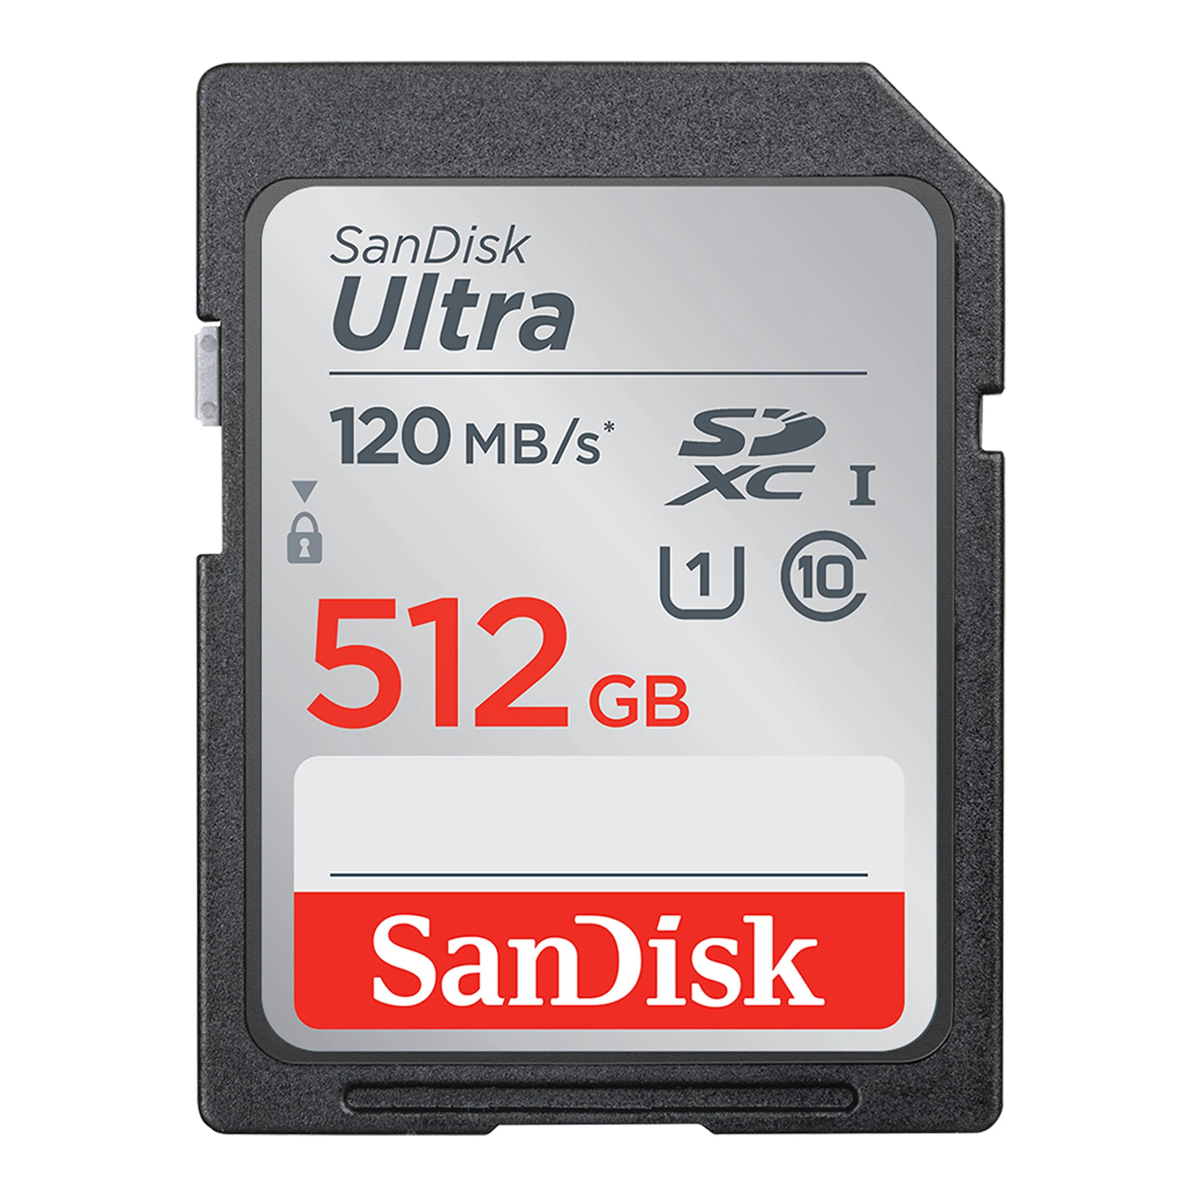 SANDISK Ultra, Micro-SD, Speicherkarte, SDHC, SD MB/s GB, 120 512 SDXC